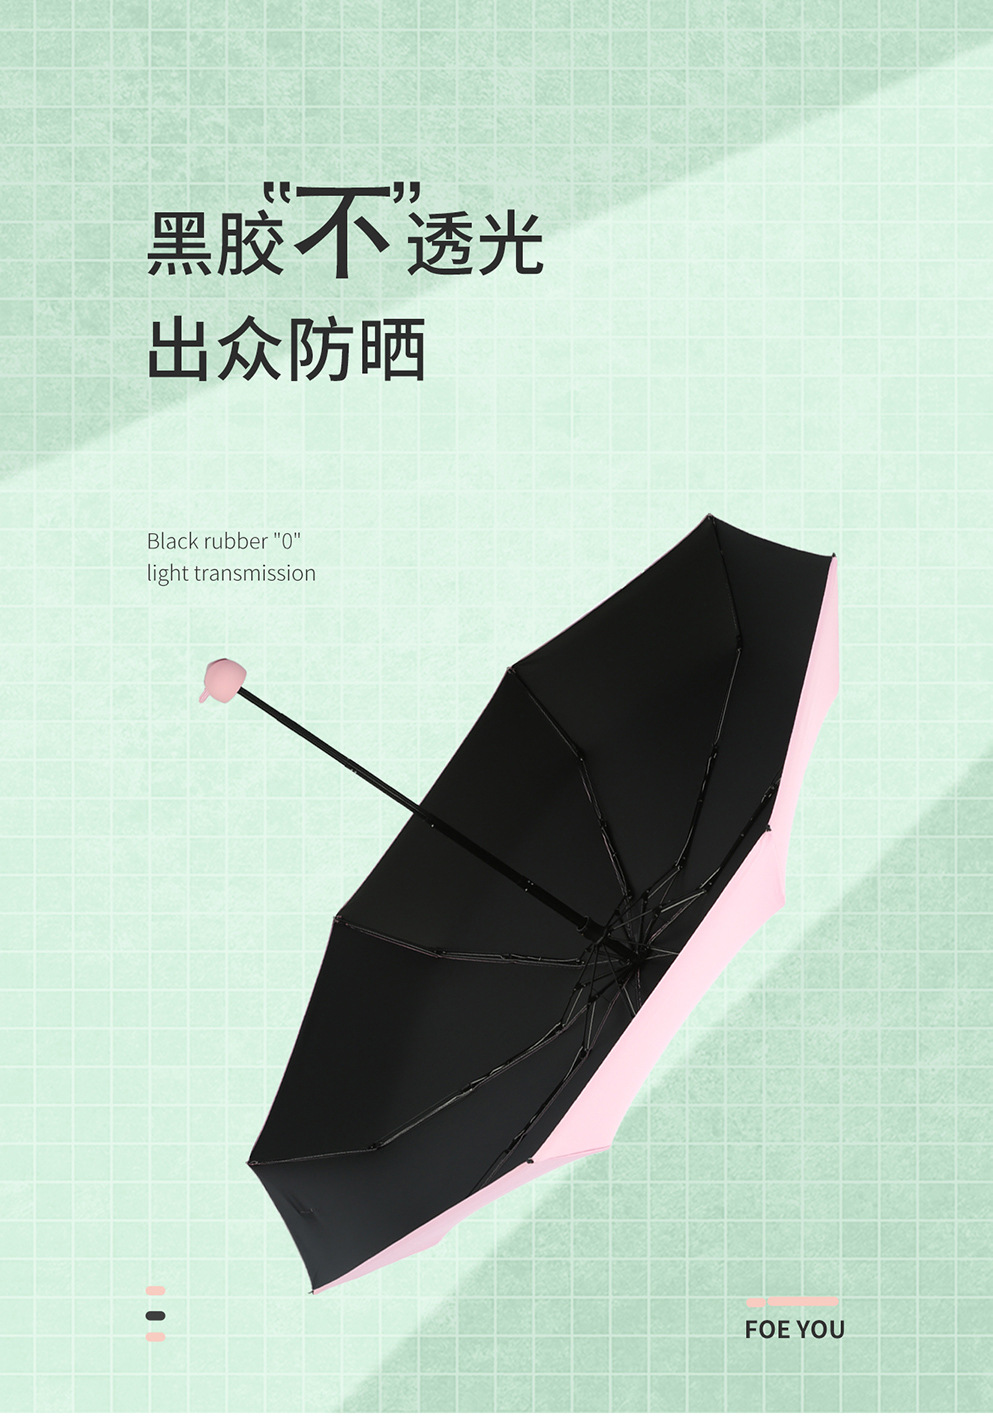 迷你口袋胶囊伞小清新黑胶防晒遮阳伞晴雨两用五折伞广告雨伞logo详情8